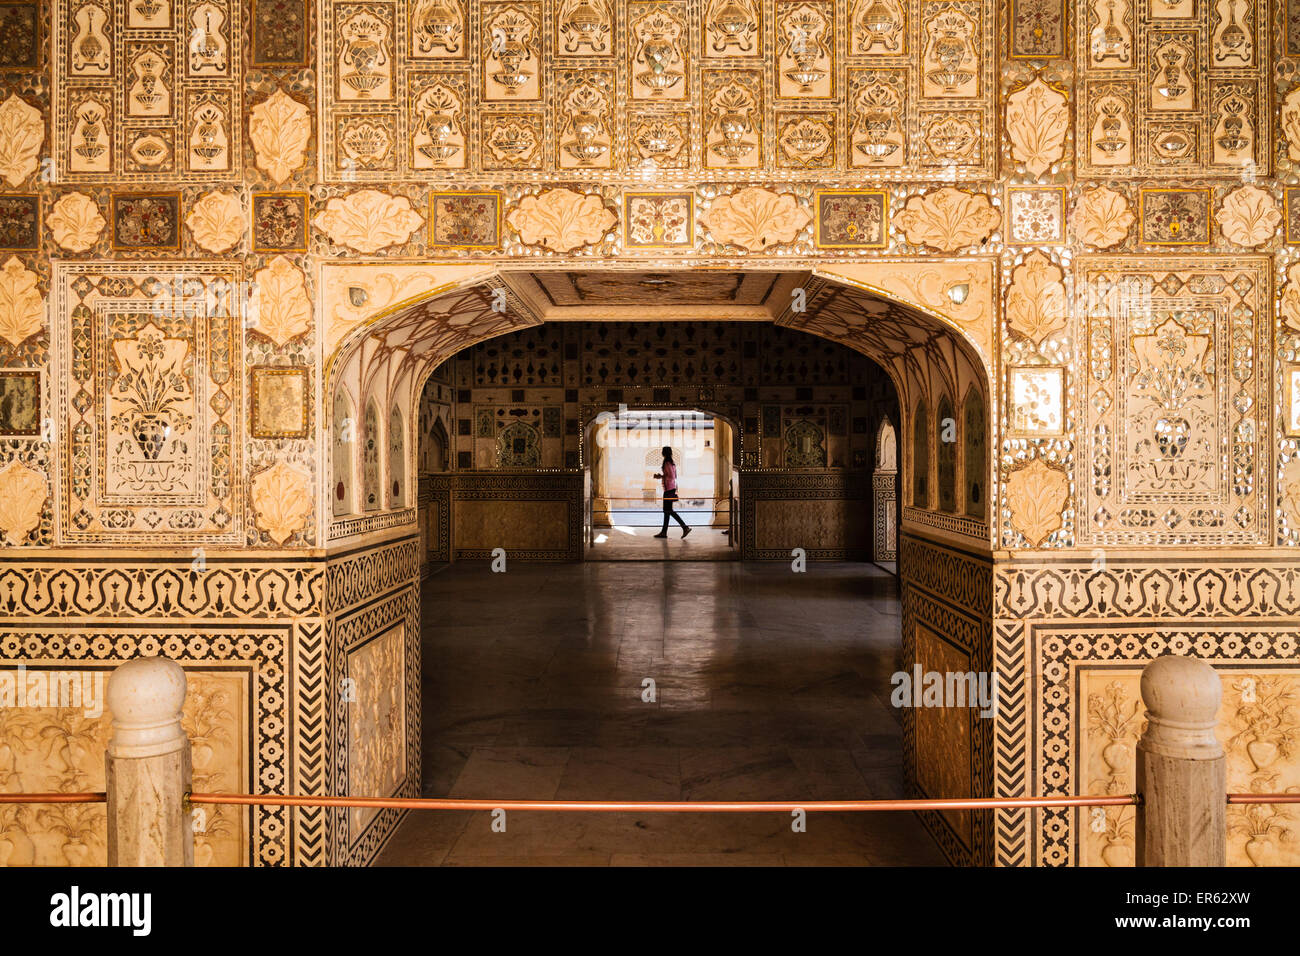 Entrée de la galerie des glaces, au Fort d'Amber, Jaipur, Rajasthan, Inde Banque D'Images